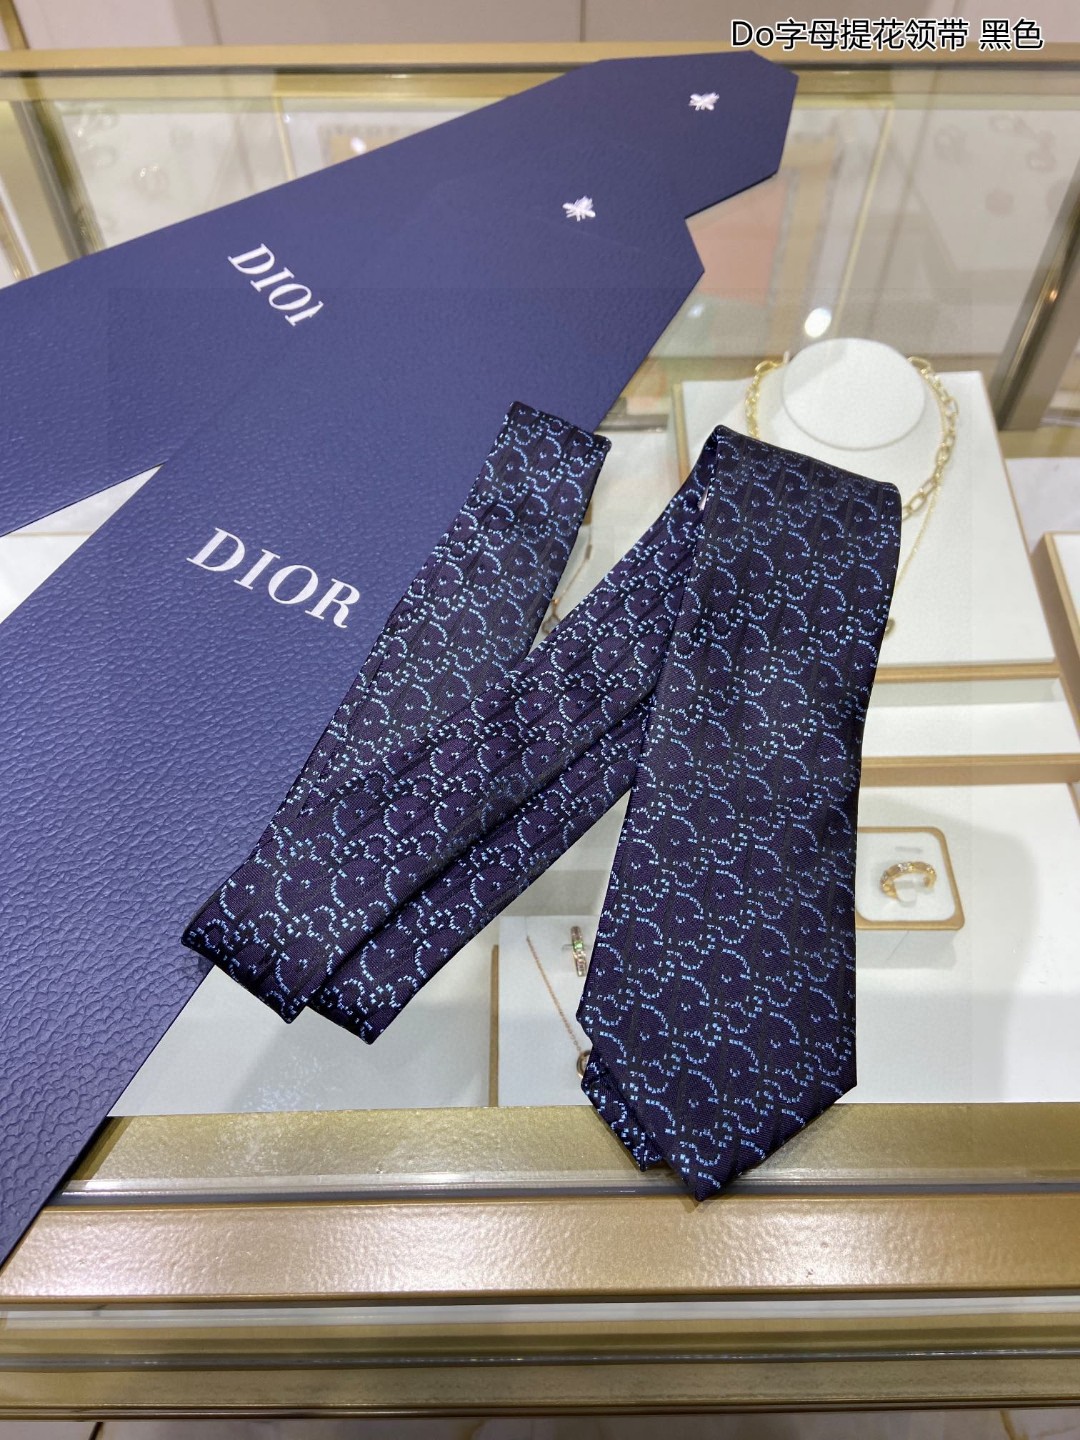 爆款到Do家新款领带配盒子Dior男士Do字母提花领带稀有展现精湛手工与时尚优雅的理想选择这款采用DO家